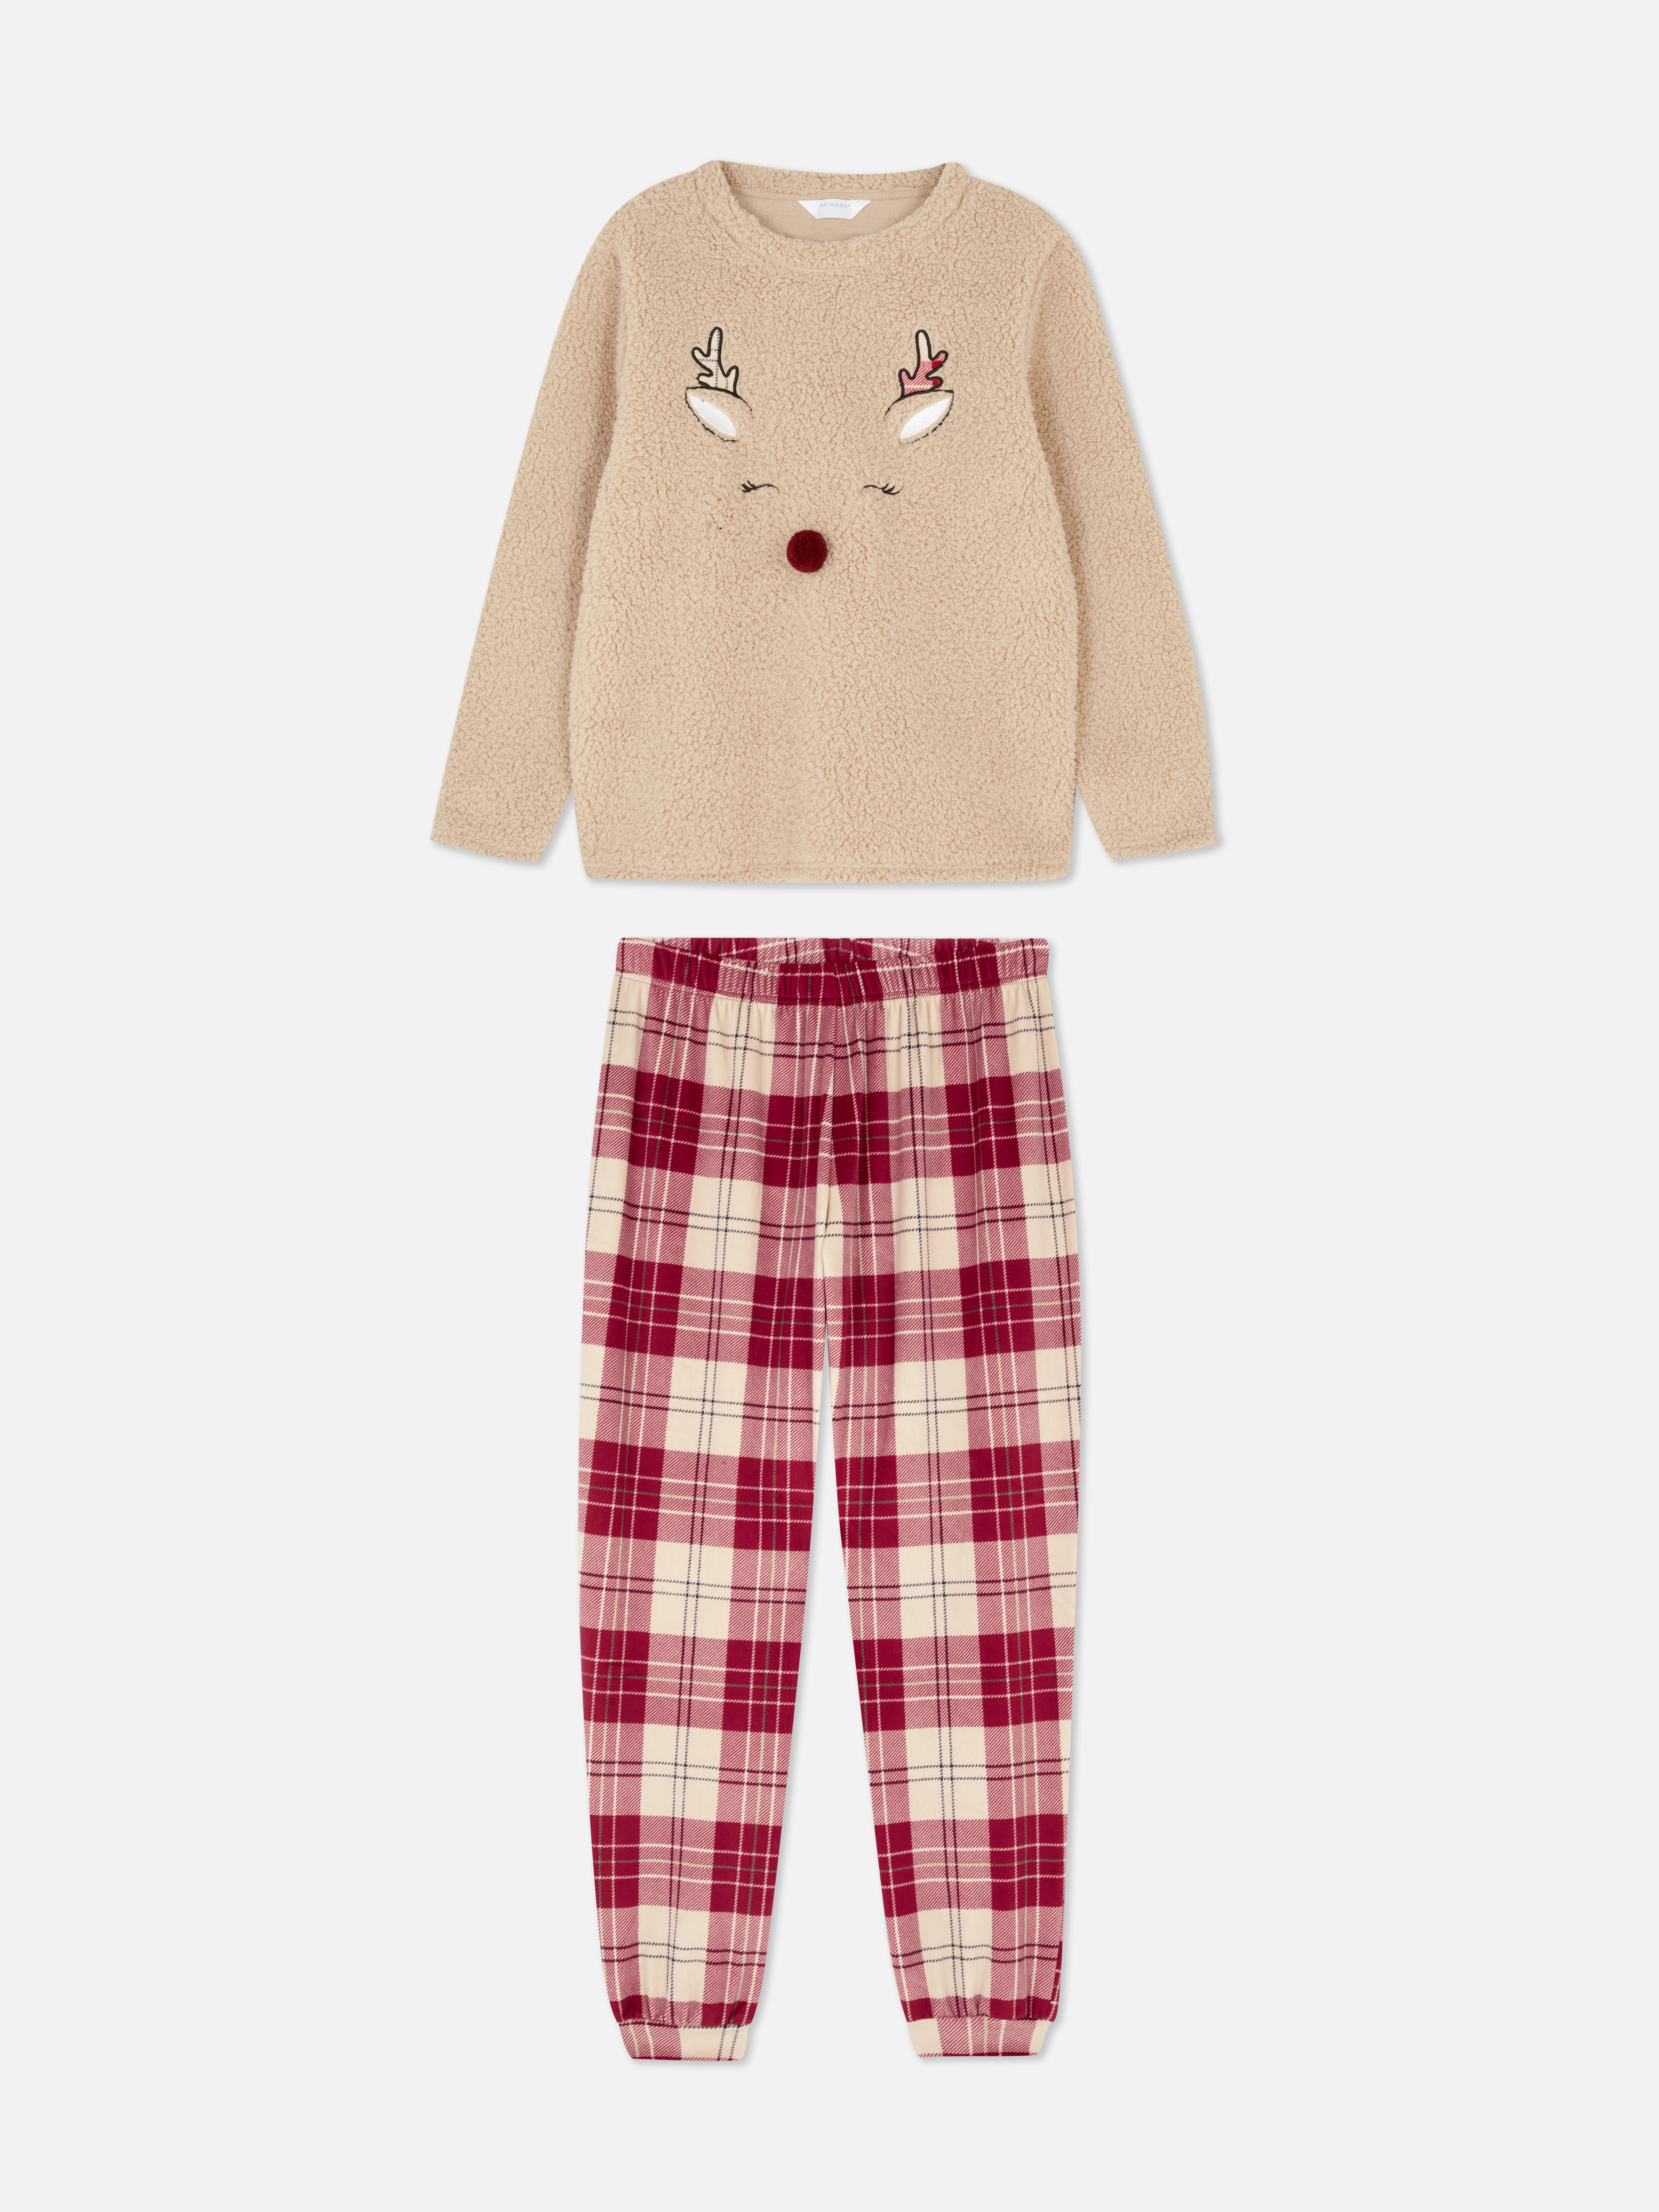 Women's Fleece Christmas Pajamas